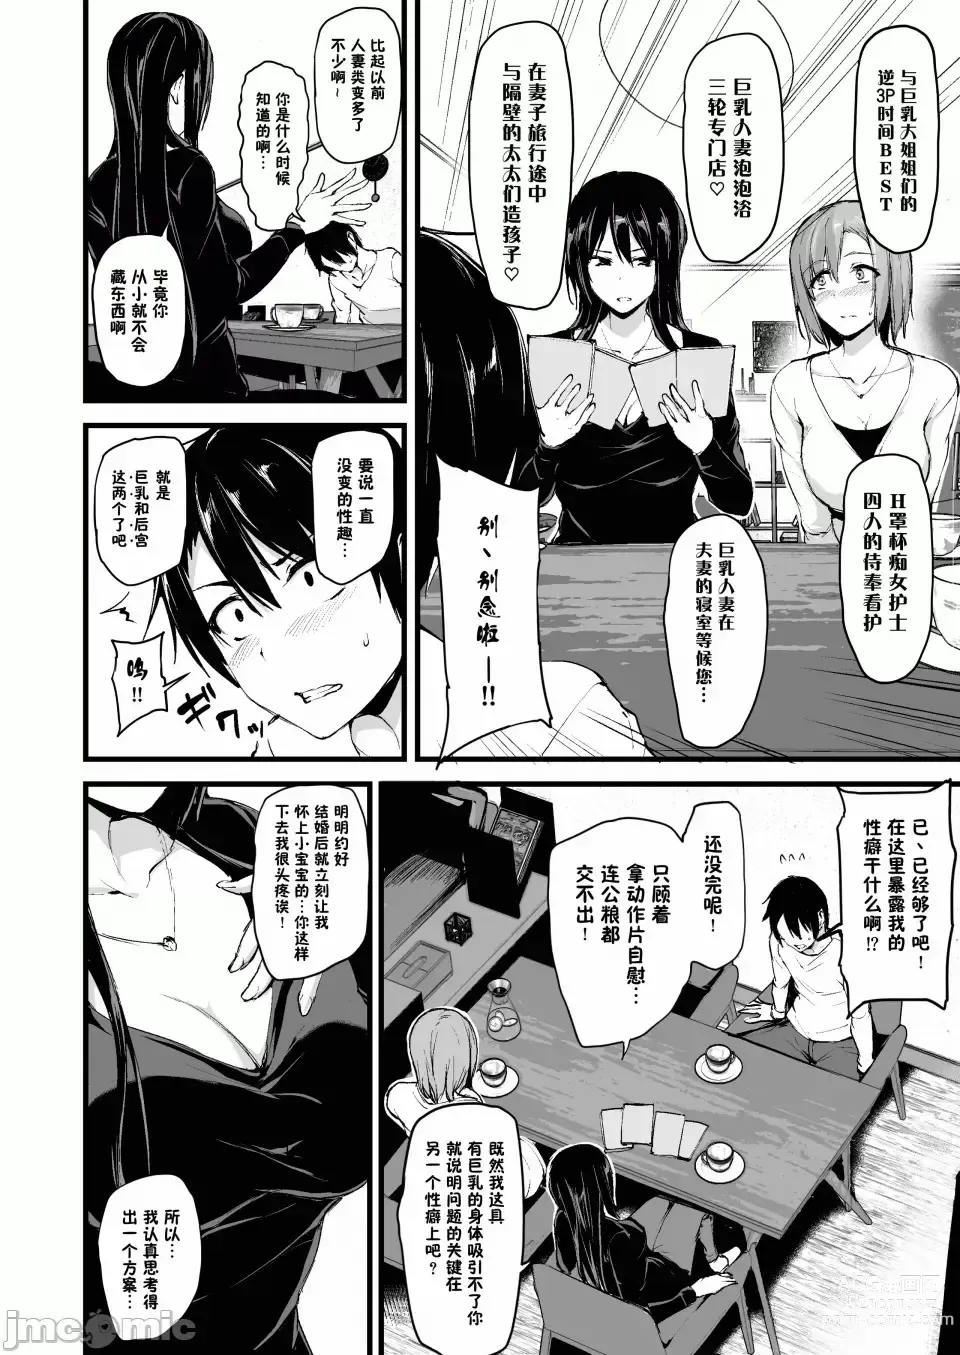 Page 5 of doujinshi 巨乳が2人いないと勃起しない夫のために友達を連れてきた妻 巨乳が二人いないと オマケ本